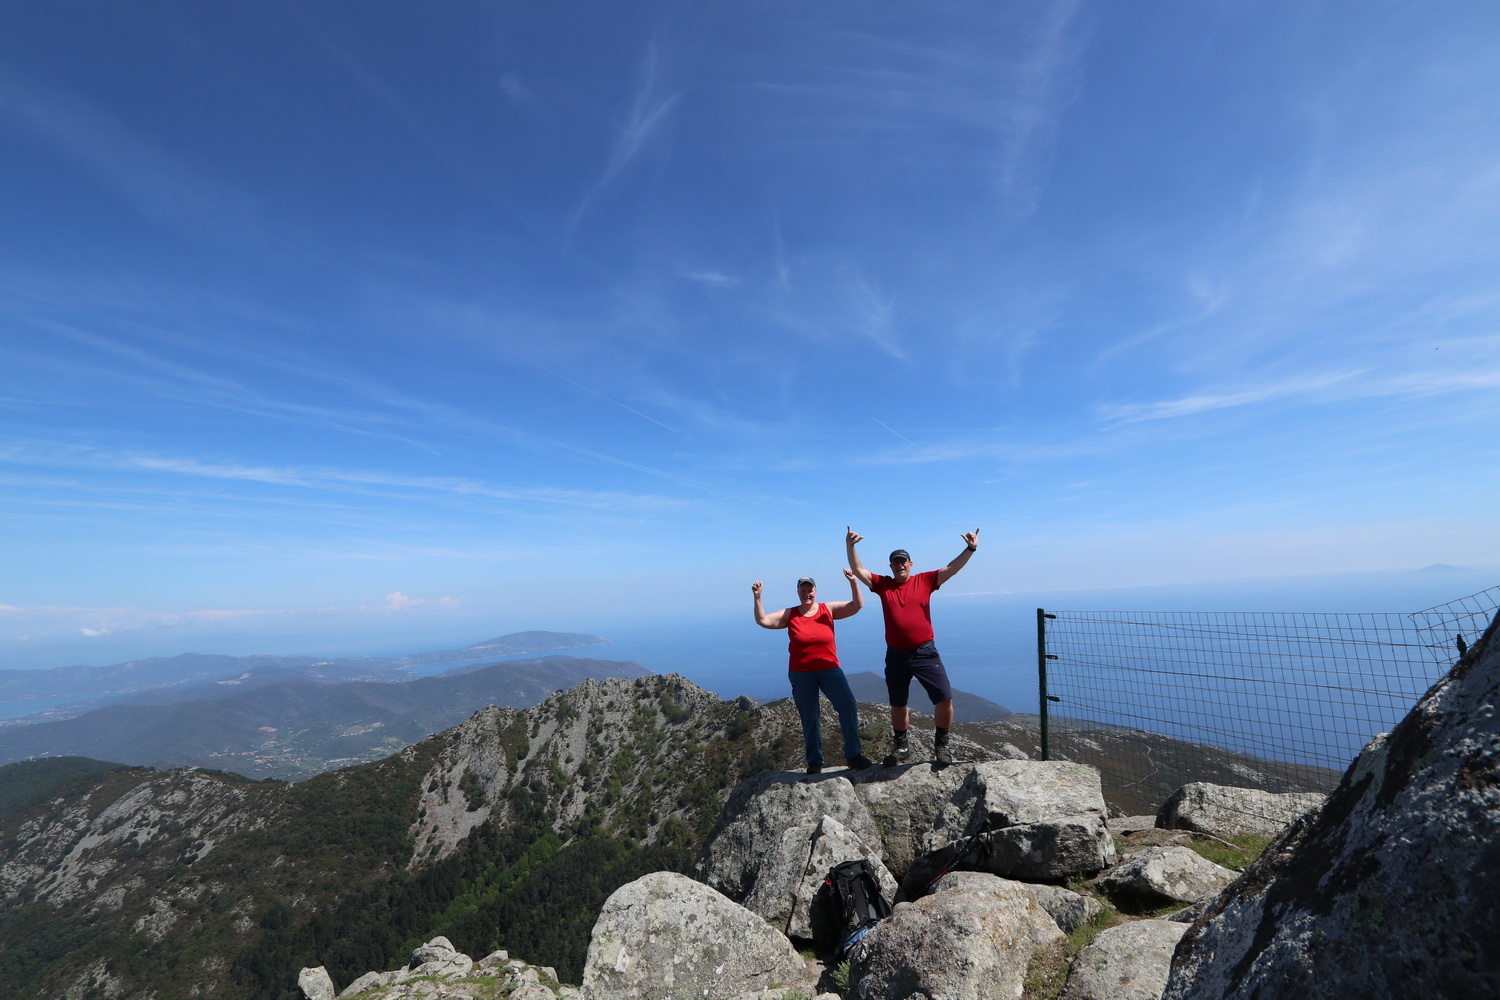 Top of Elba 1019m